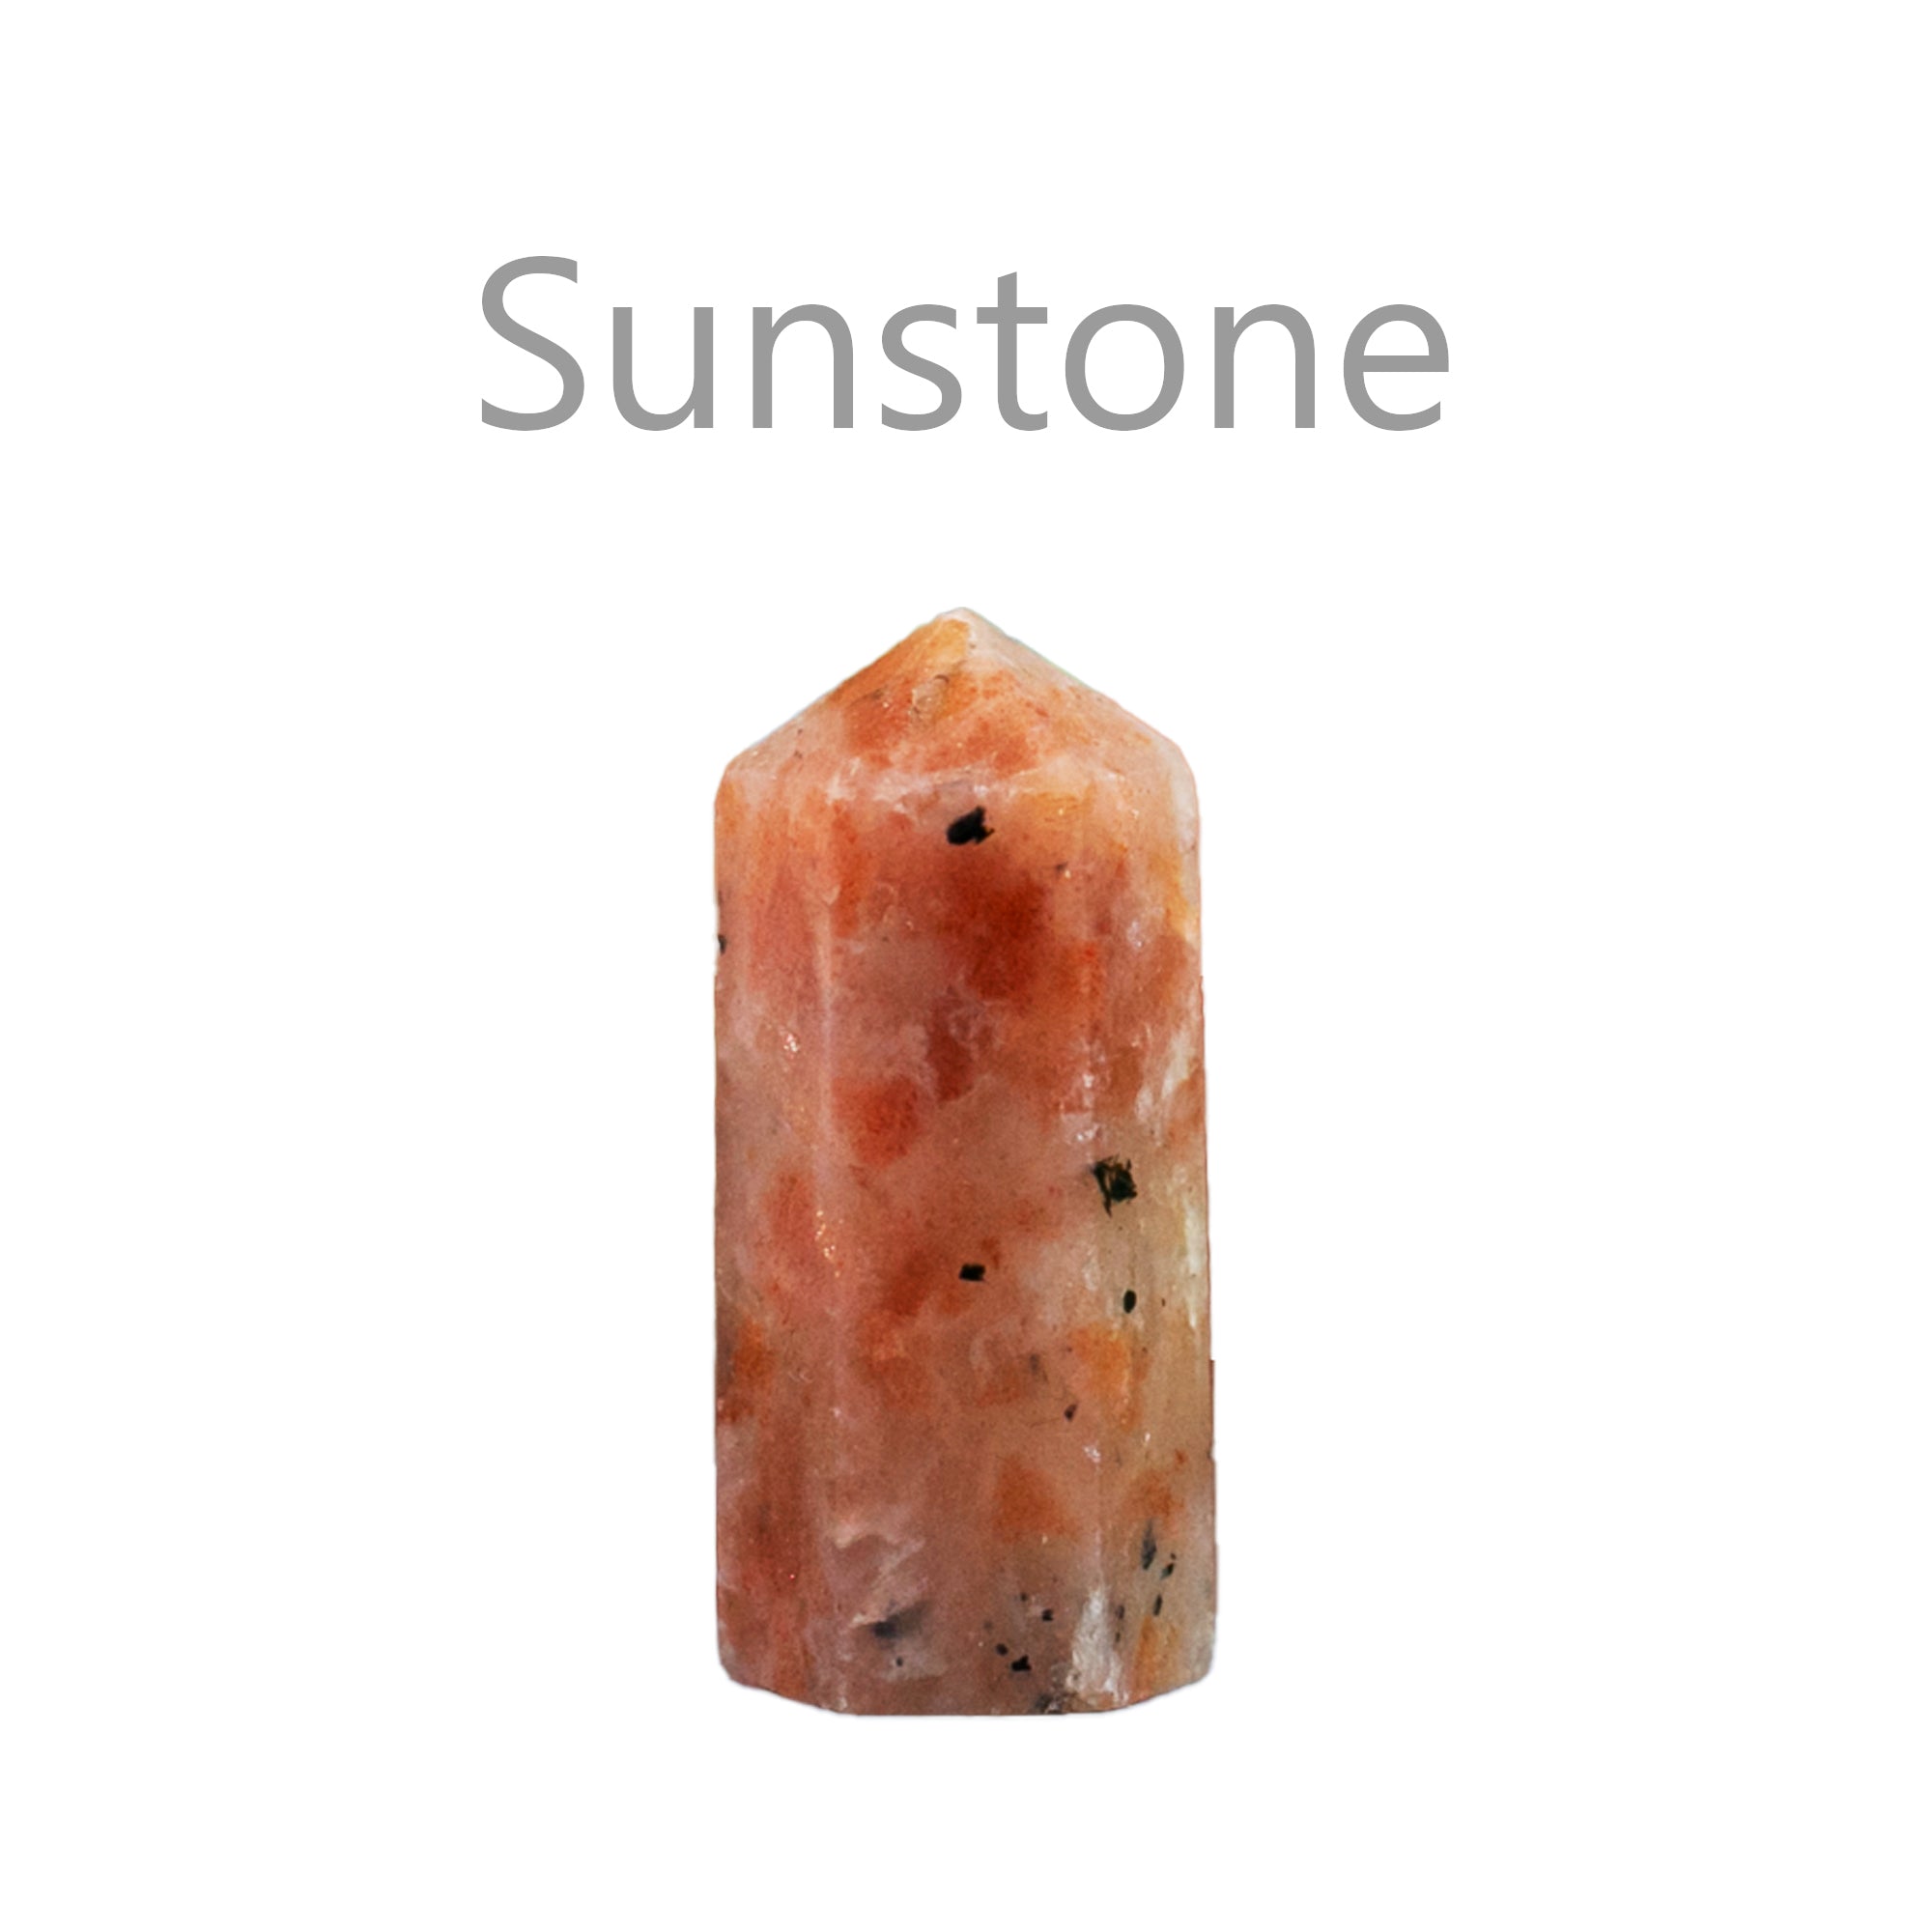 sunstone